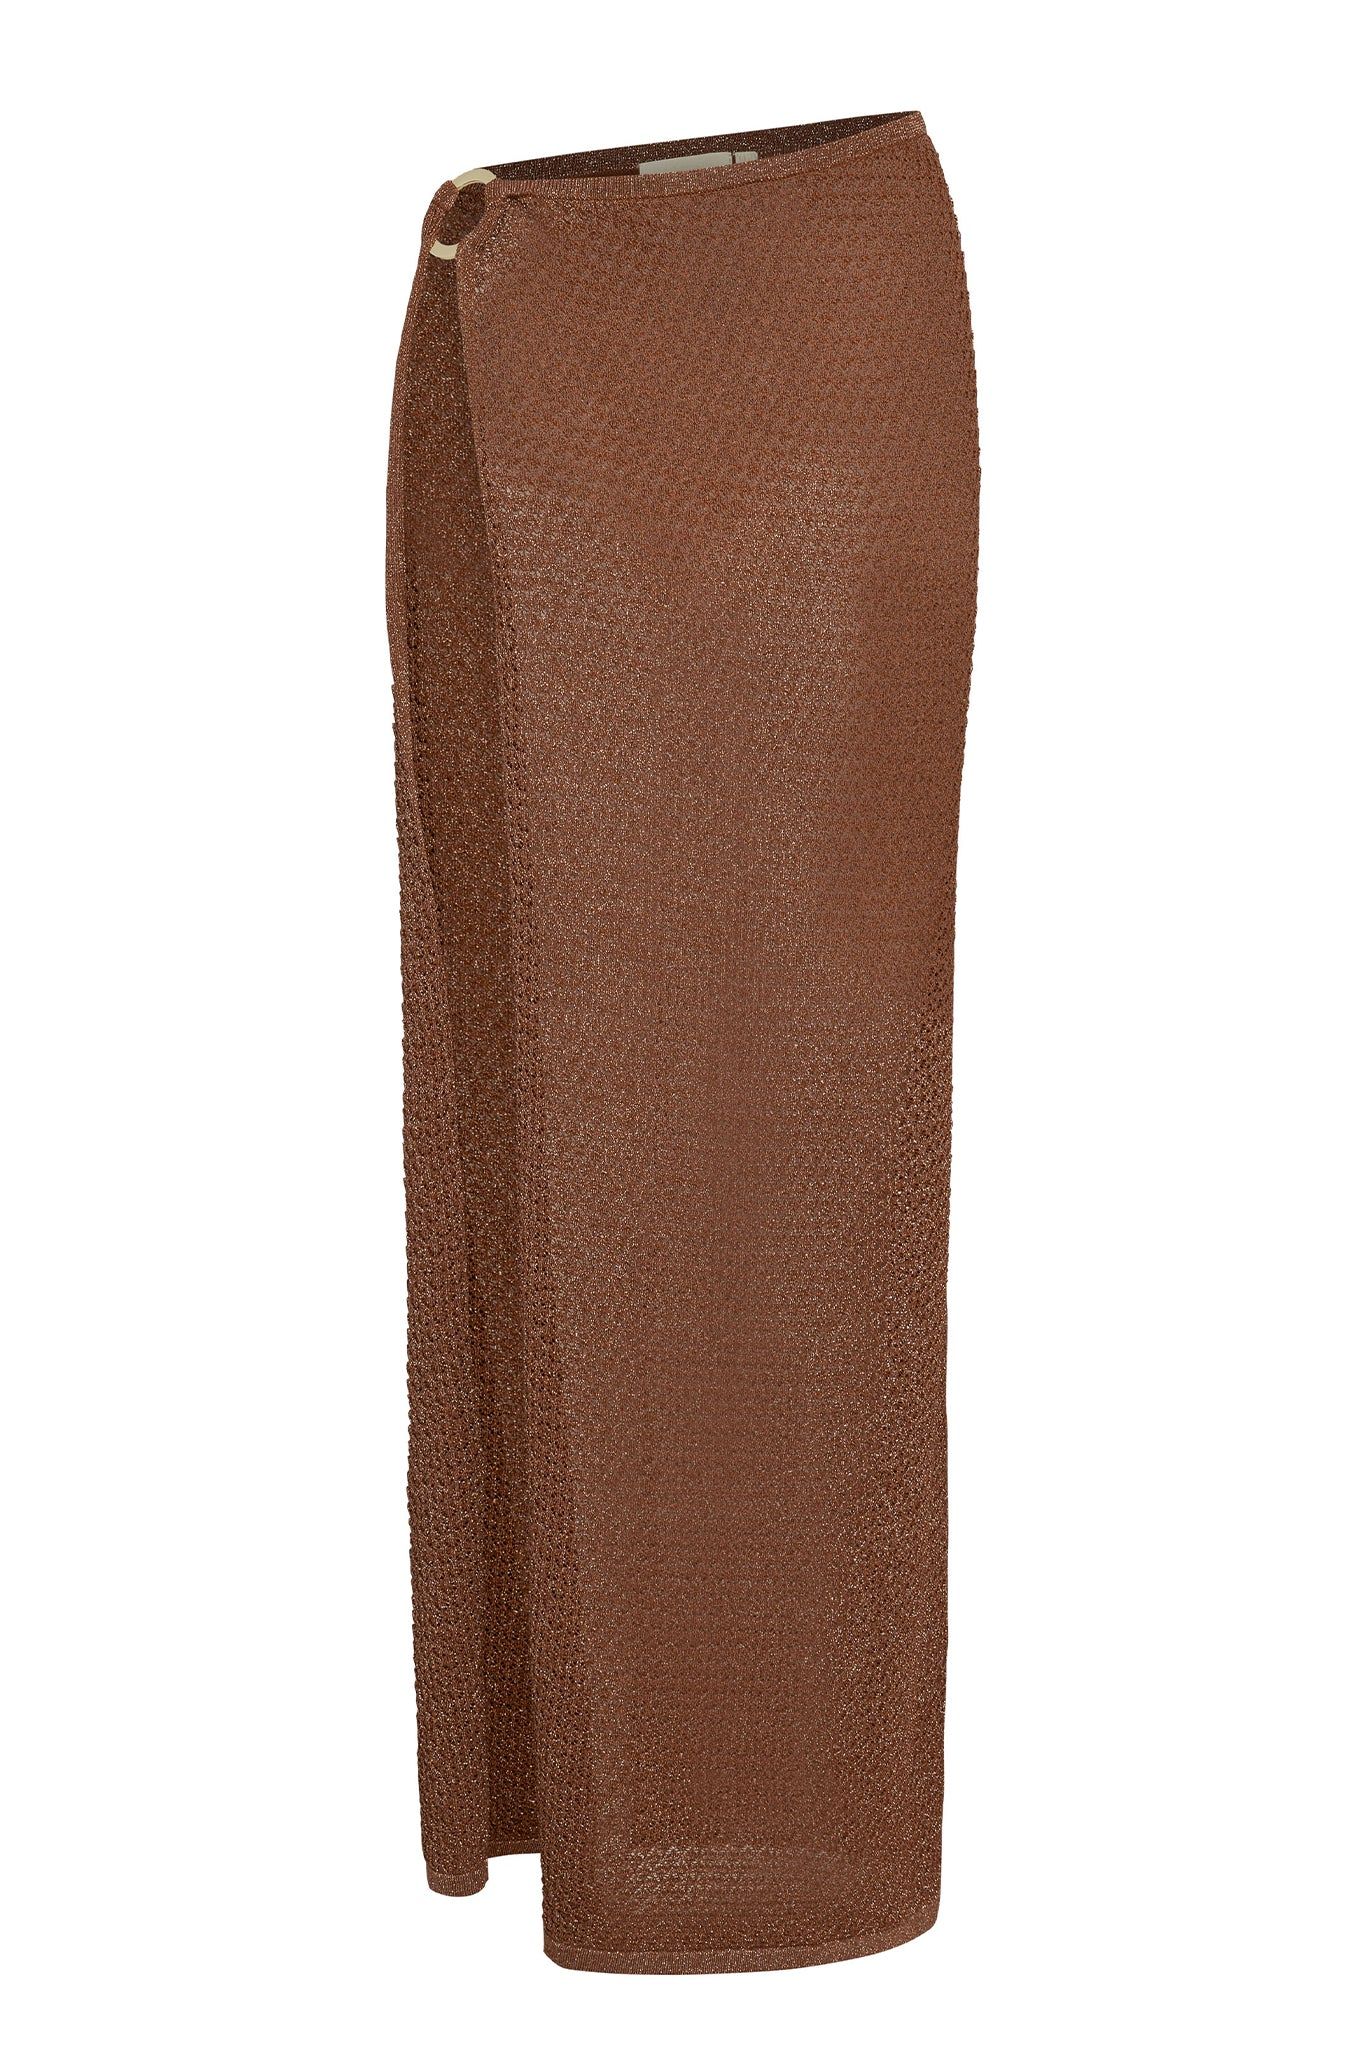 Palermo Skirt - Bronze Lurex Lace Crochet | Monday Swimwear